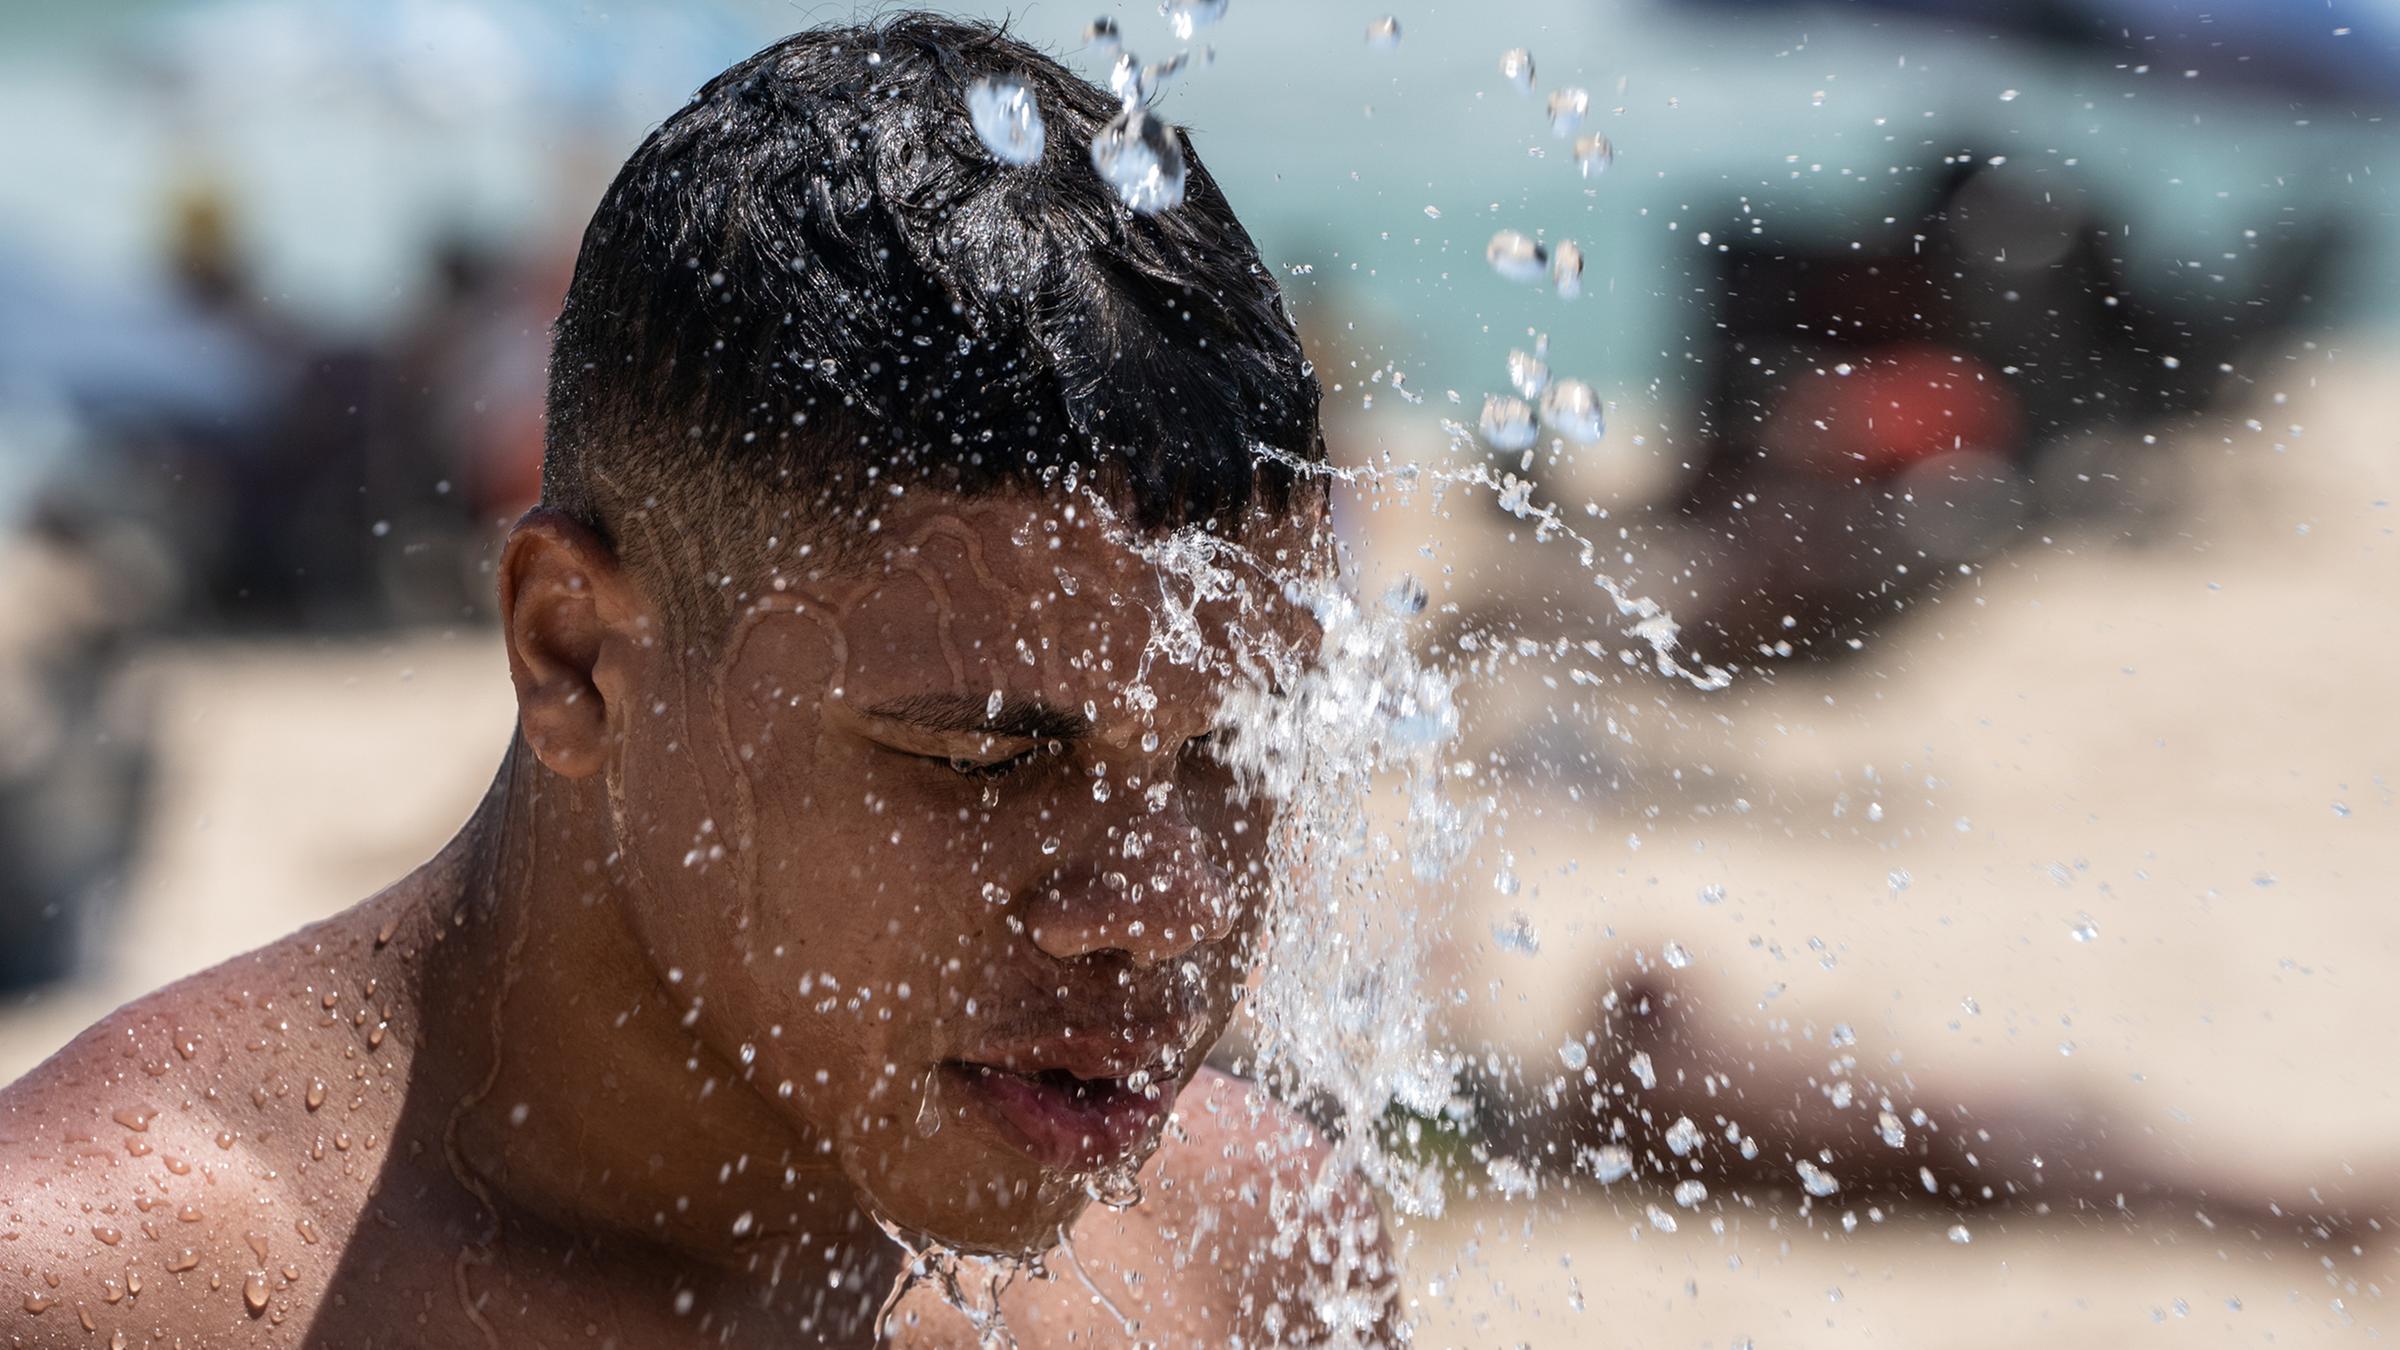  Ein Mann duscht am Strand von Ipanema